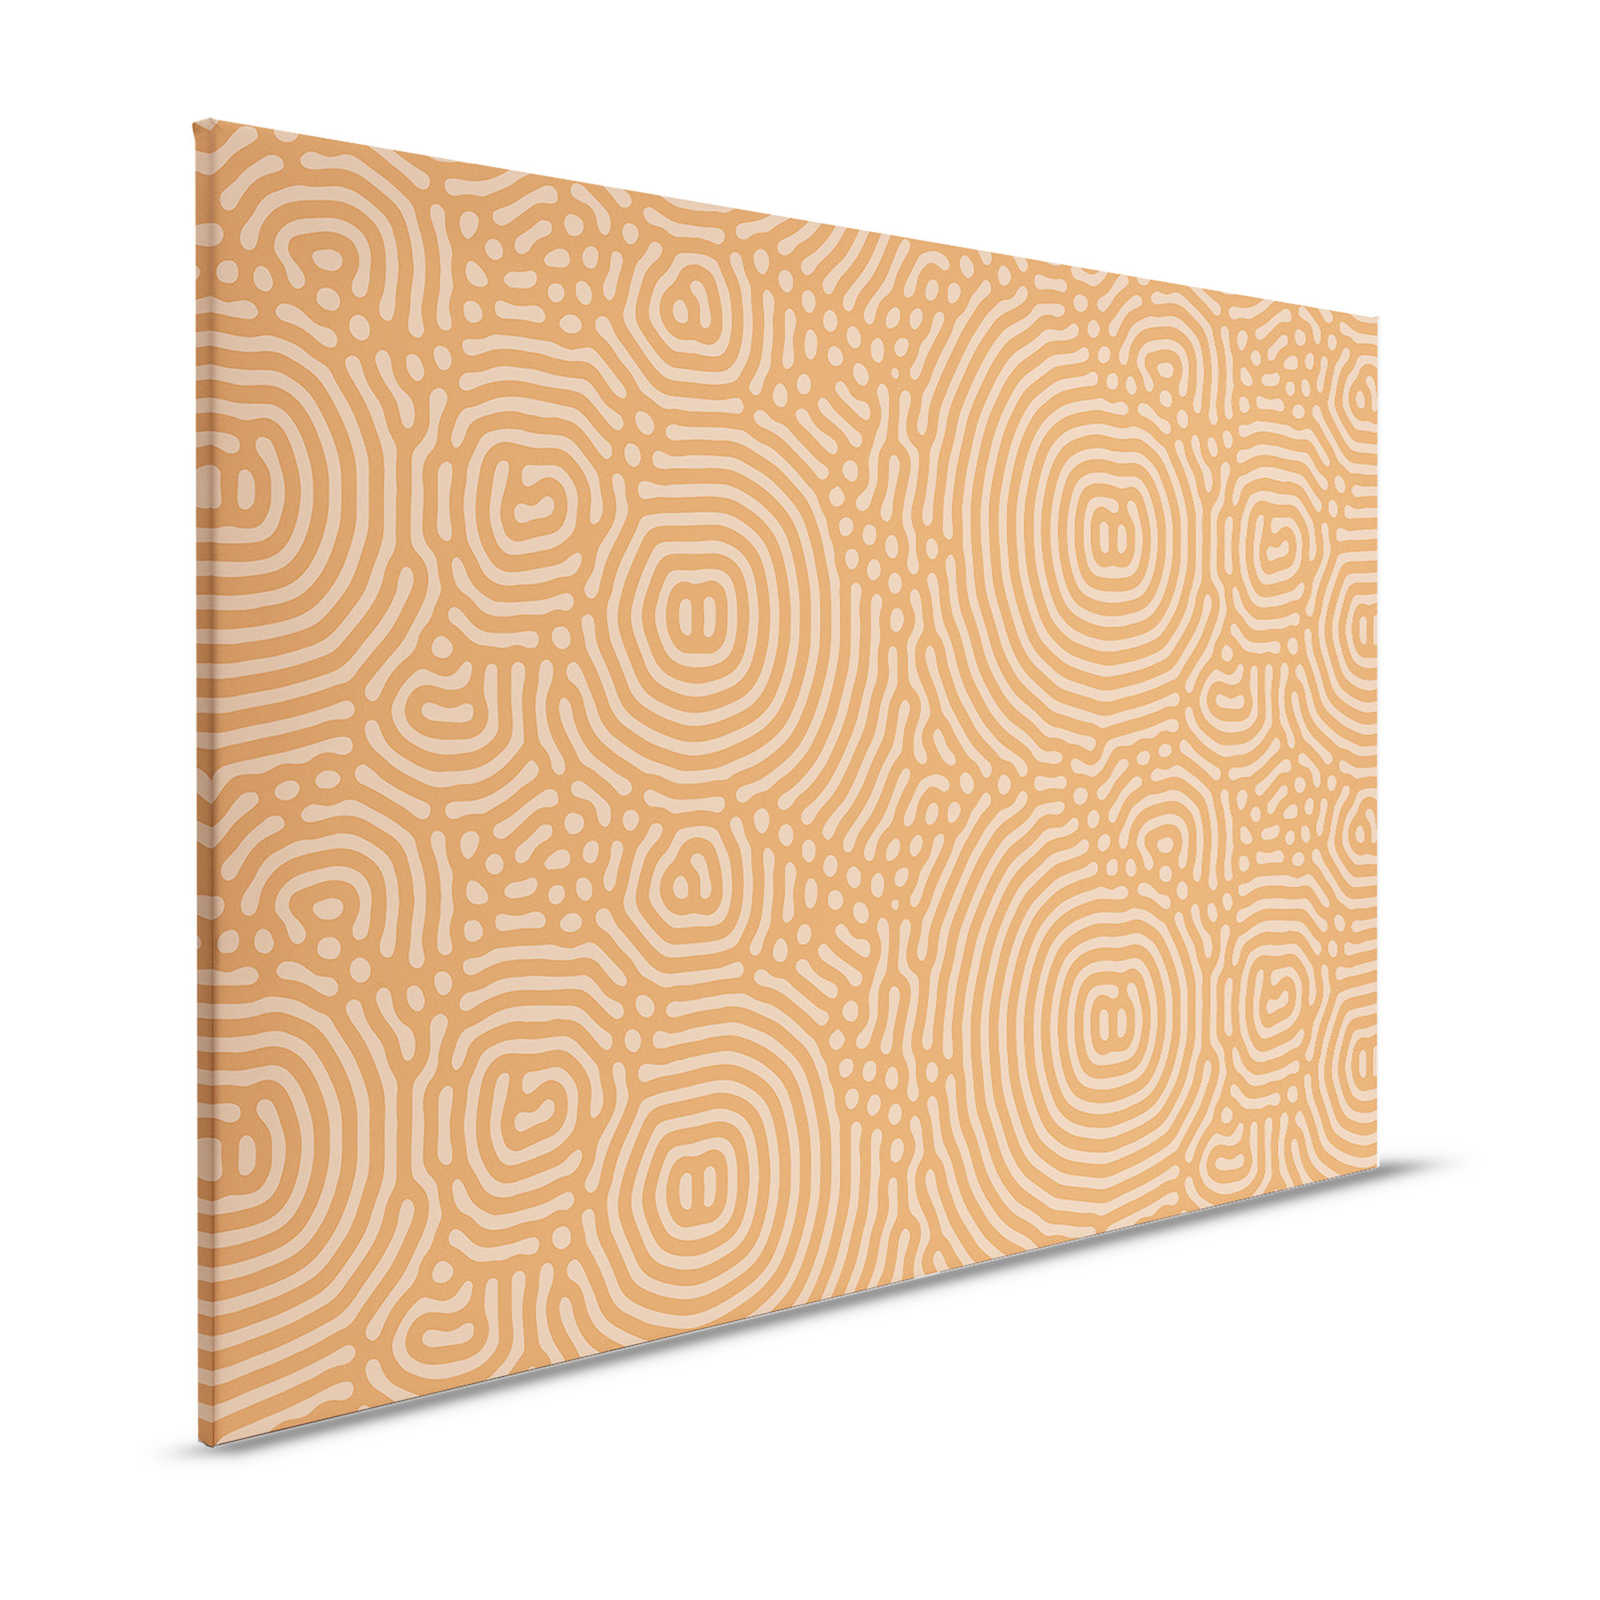 Sahel 2 - Toile orange motif labyrinthe terre cuite - 1,20 m x 0,80 m
